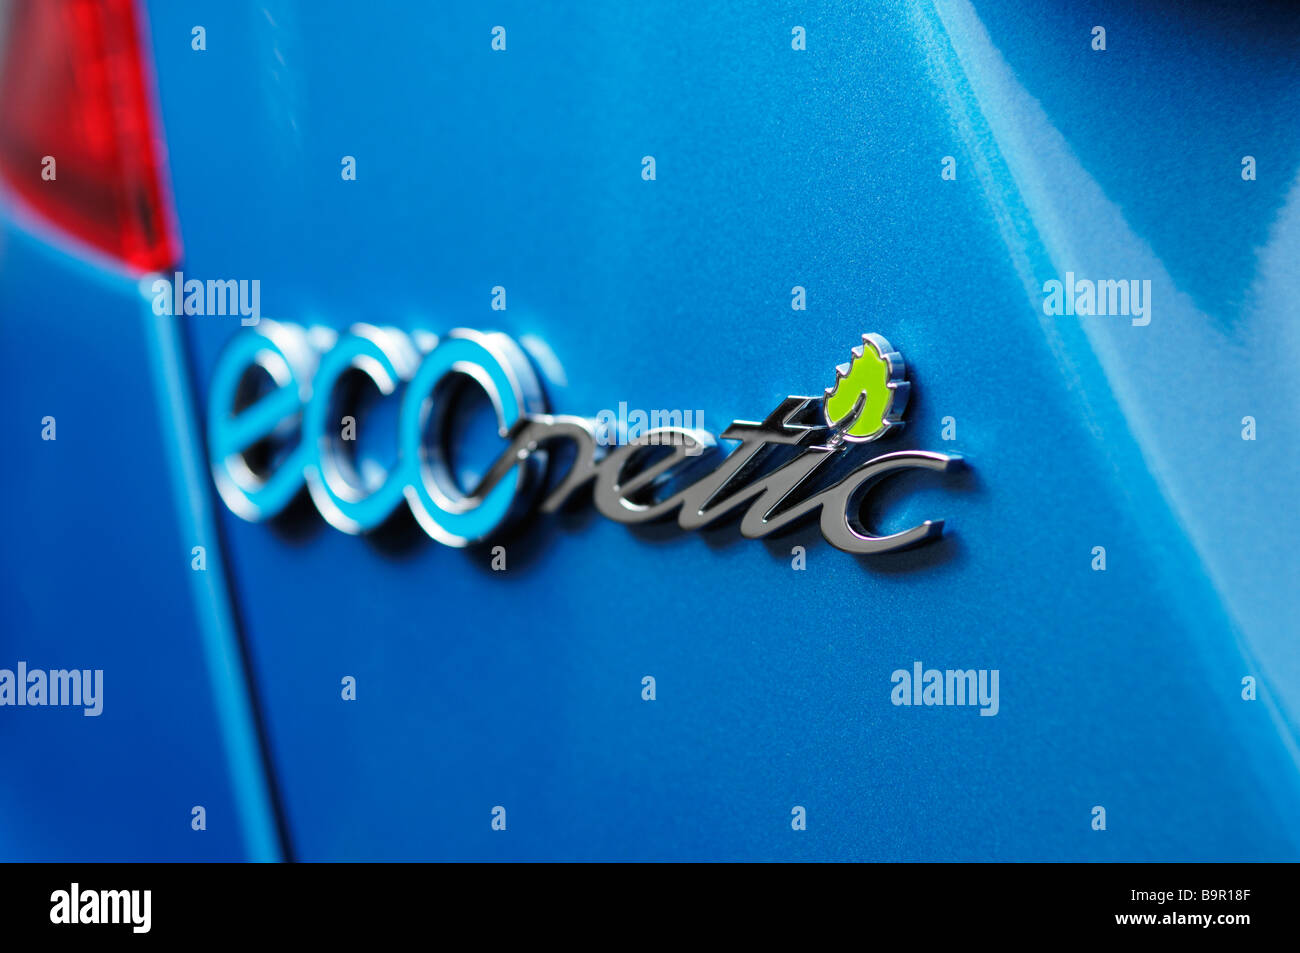 ECOnetic. Le modèle nom donné à la gamme de Ford Motor Cars vert conçu pour moins d'émissions et la meilleure économie de carburant. Ce modèle particulier est la Ford Fiesta 1.6 TDCi ECOnetic, une des voitures les plus écologiques disponibles en Europe à son lancement en 2009. Banque D'Images